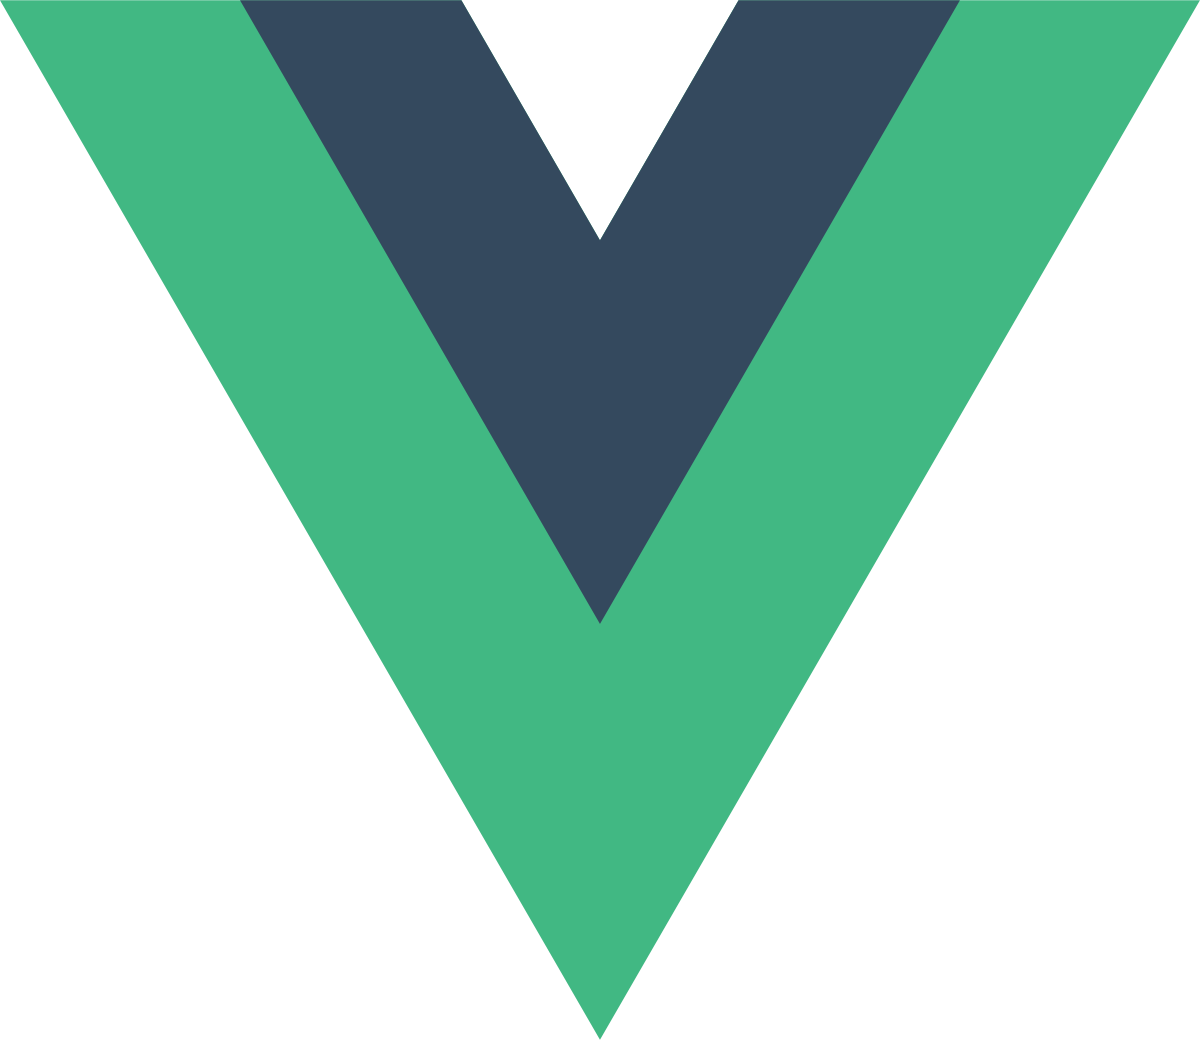 Vue Navigator for VSCode